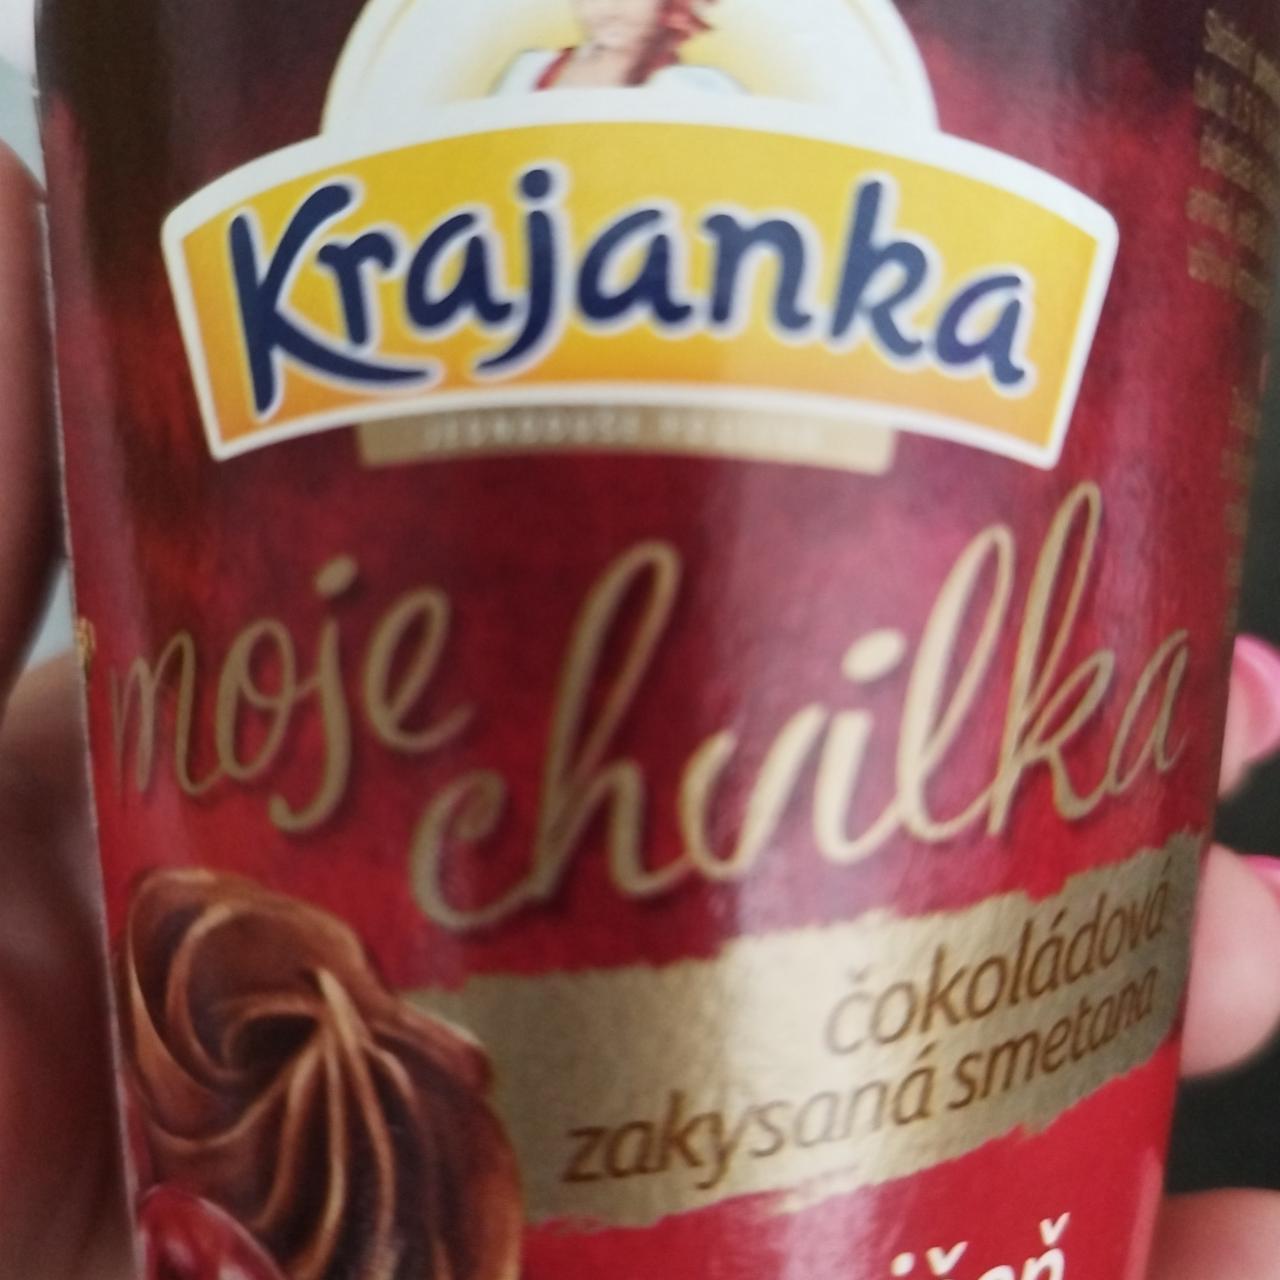 Fotografie - Moje chvilka čokoládová zakysaná smetana višeň Krajanka